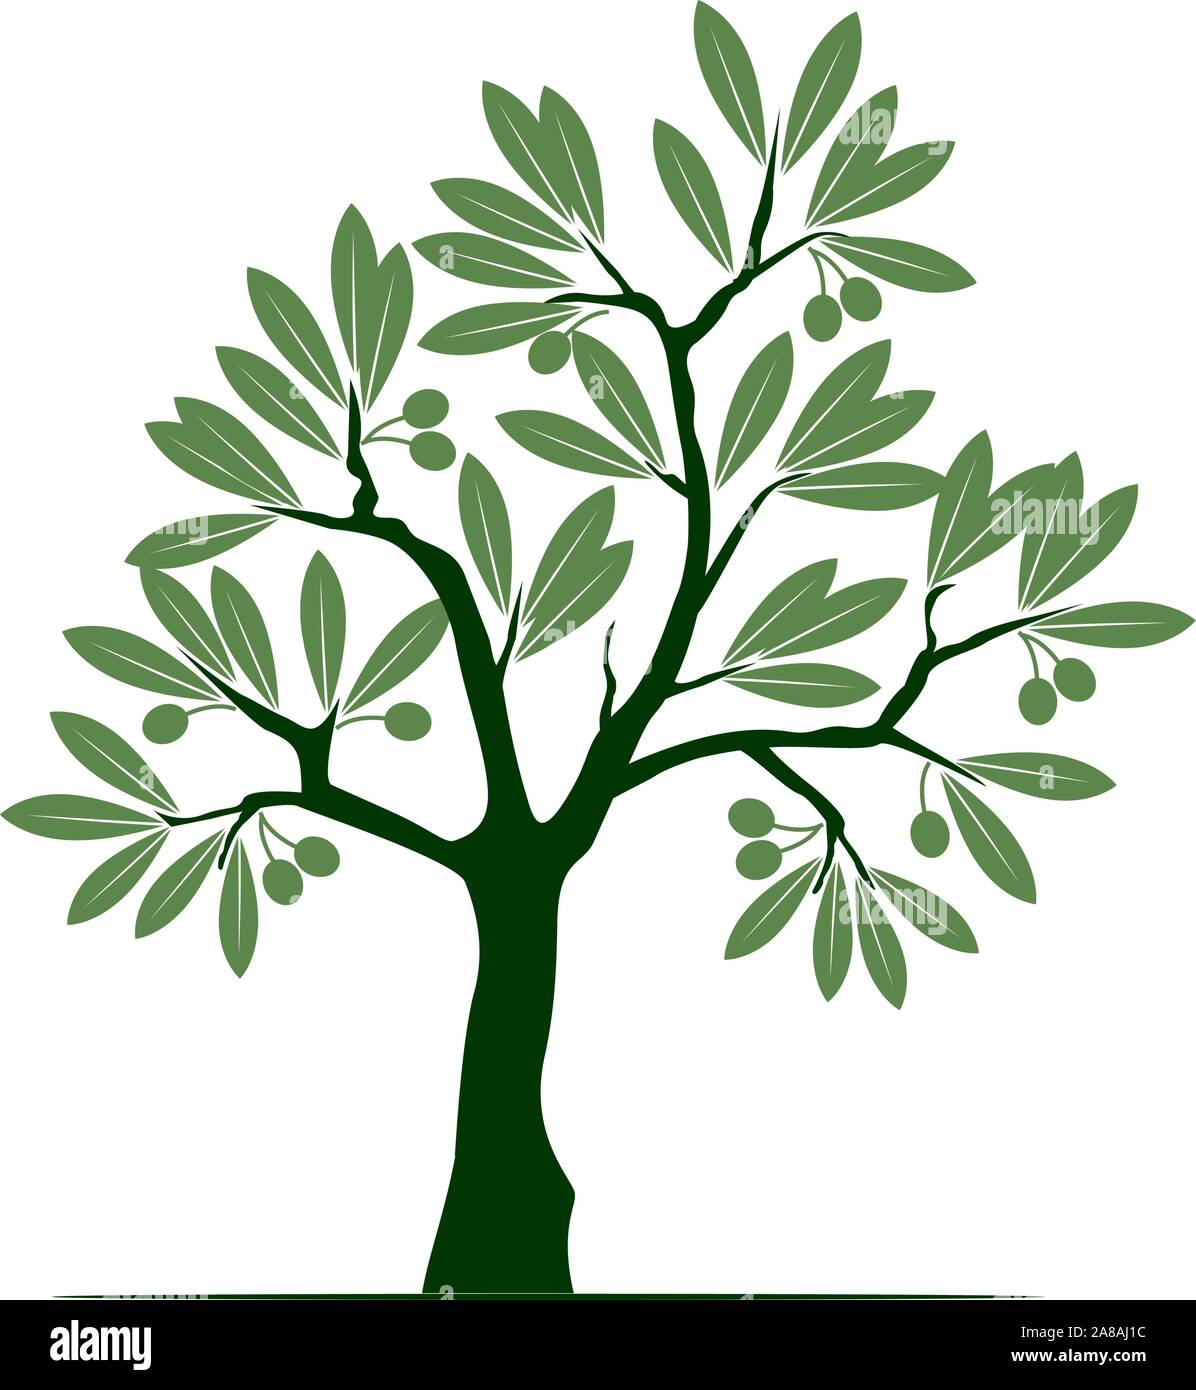 Verde Oliva isolato albero su sfondo bianco. Illustrazione Vettoriale e concetto pittogramma. Impianto in giardino. Illustrazione Vettoriale